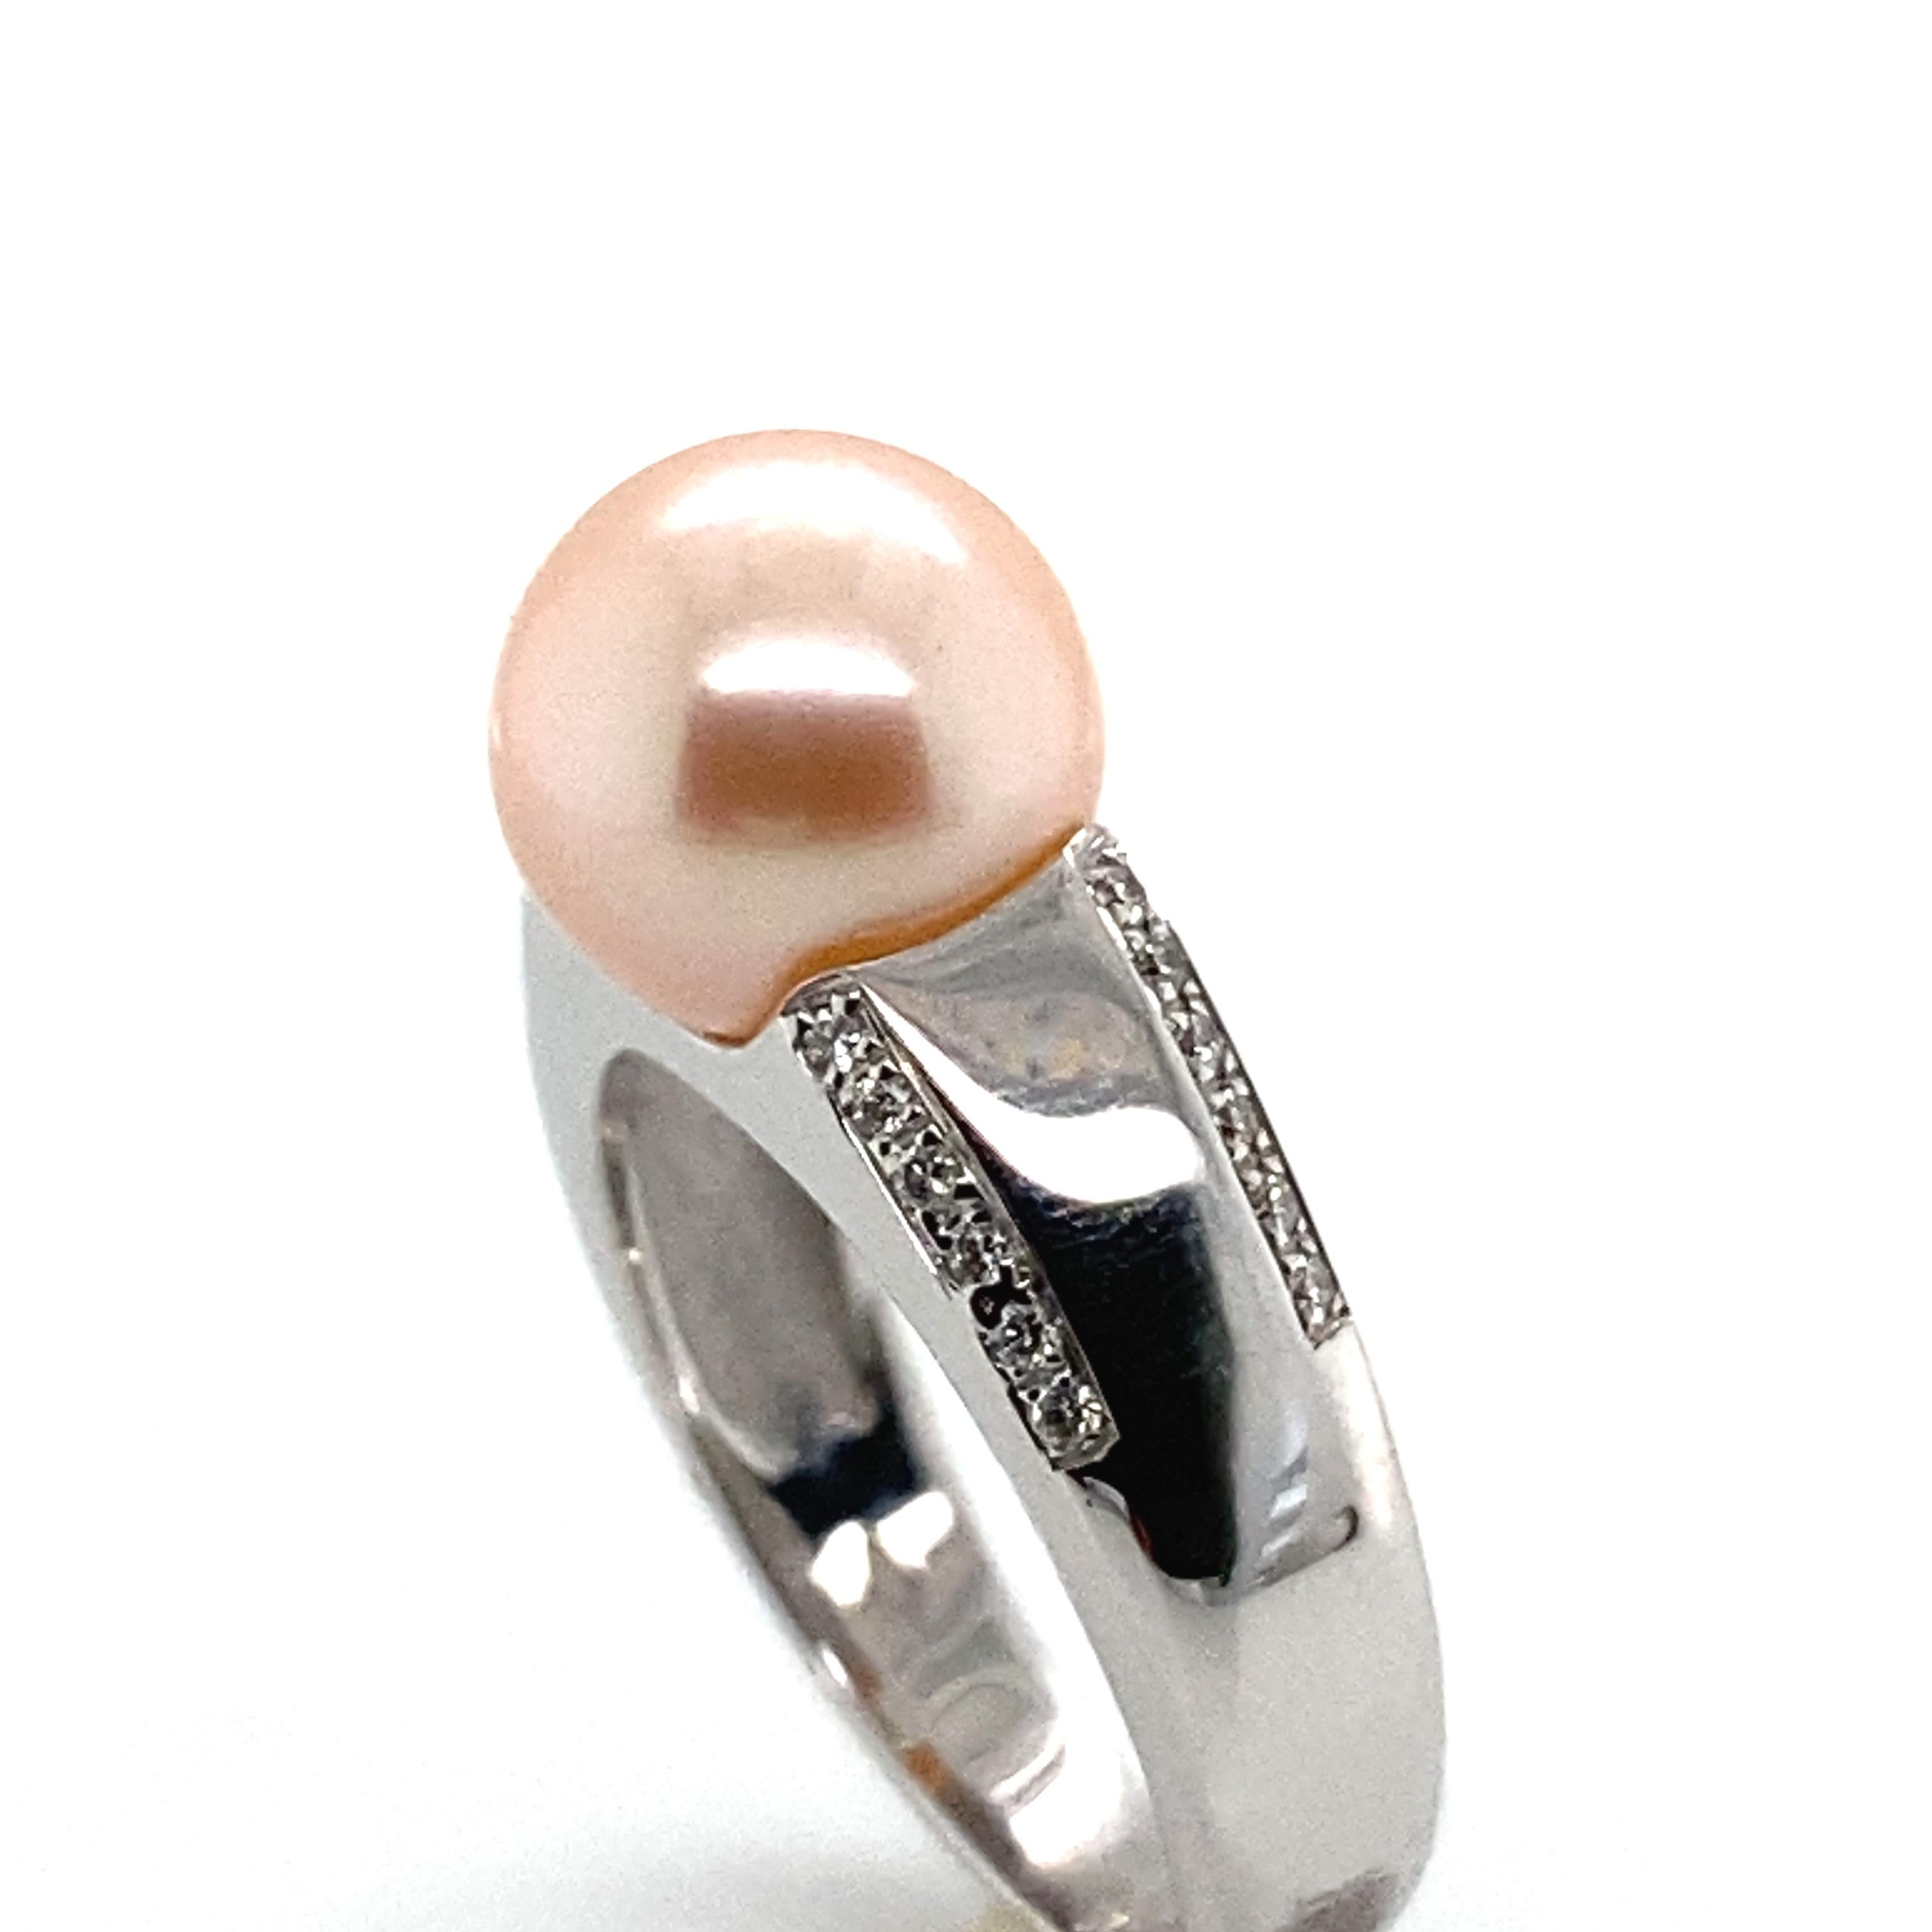 Tauchen Sie ein in zeitlose Eleganz mit diesem prächtigen Ring aus Weißgold, der mit einer wunderschönen rosa Zuchtperle und funkelnden Diamanten verziert ist. Ein wahres Schmuckkunstwerk, das alle Blicke auf sich zieht.

Die rosafarbene Zuchtperle